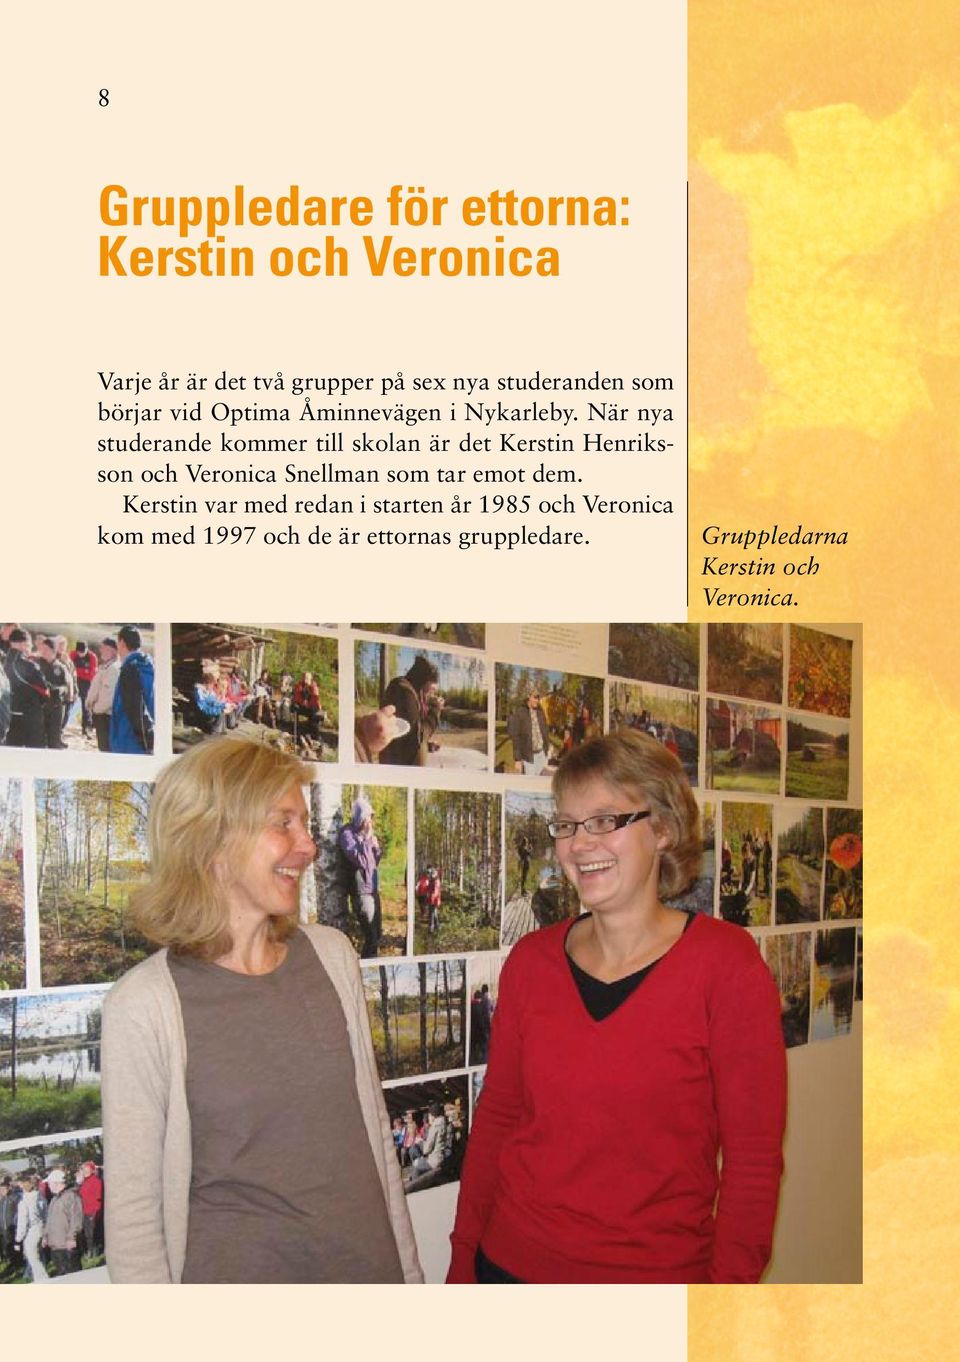 När nya studerande kommer till skolan är det Kerstin Henriksson och Veronica Snellman som tar